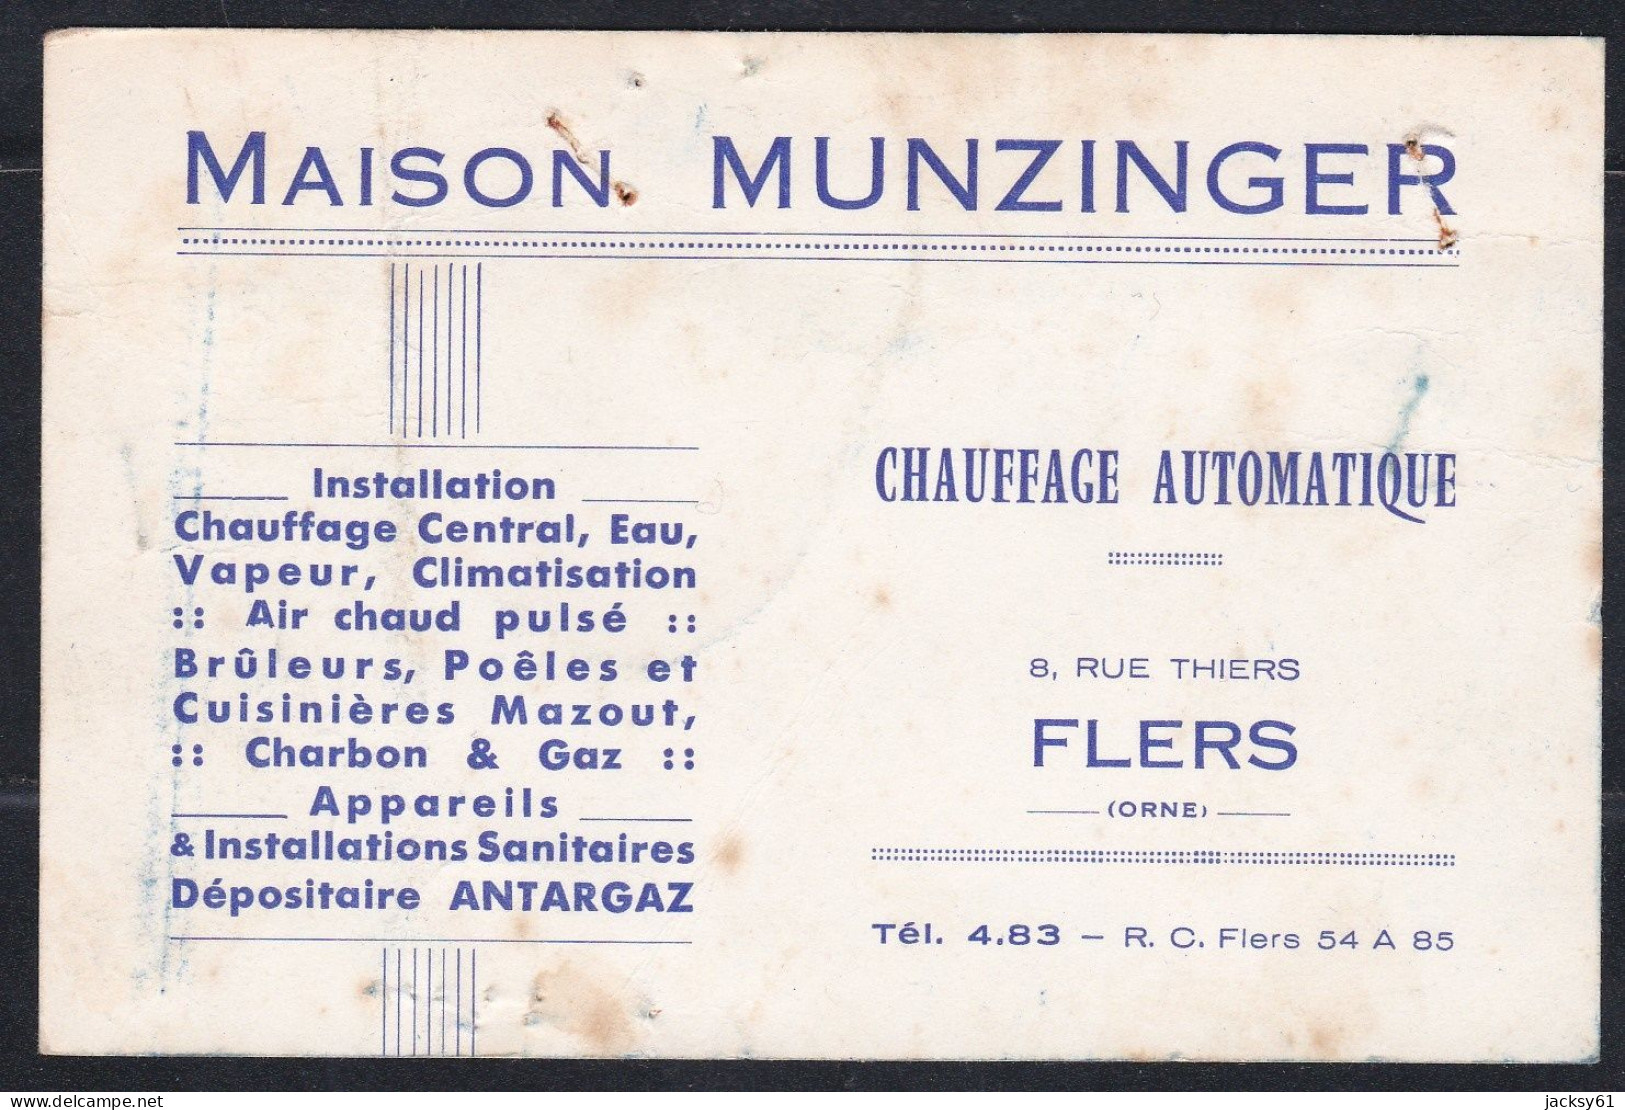 61 - Flers - Maison Munzinger - Chauffage Automatique - Visiting Cards